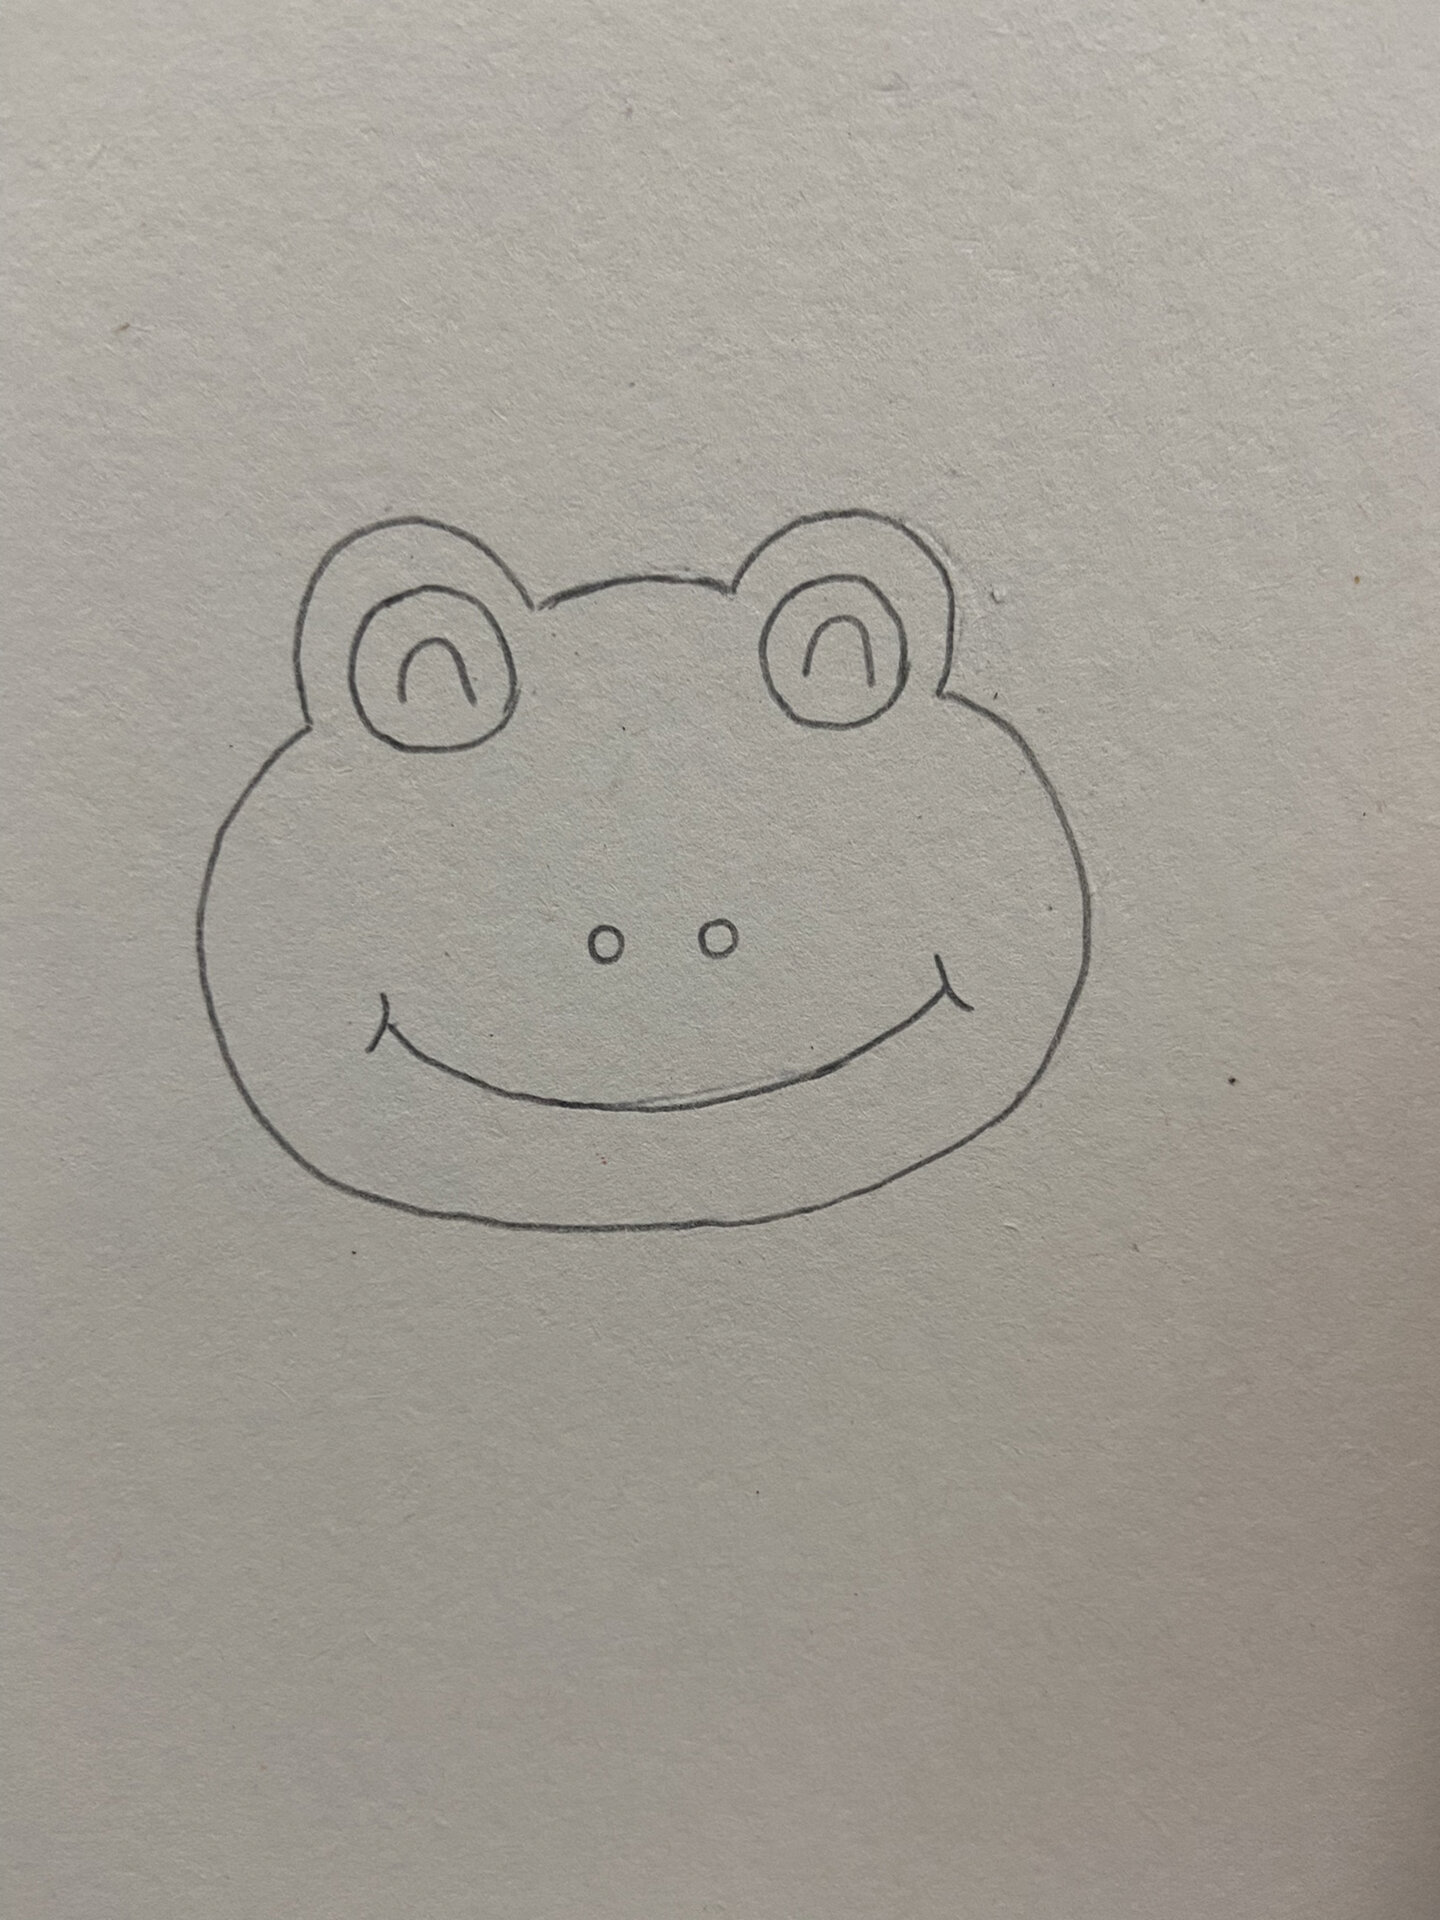 青蛙 简笔画 手绘